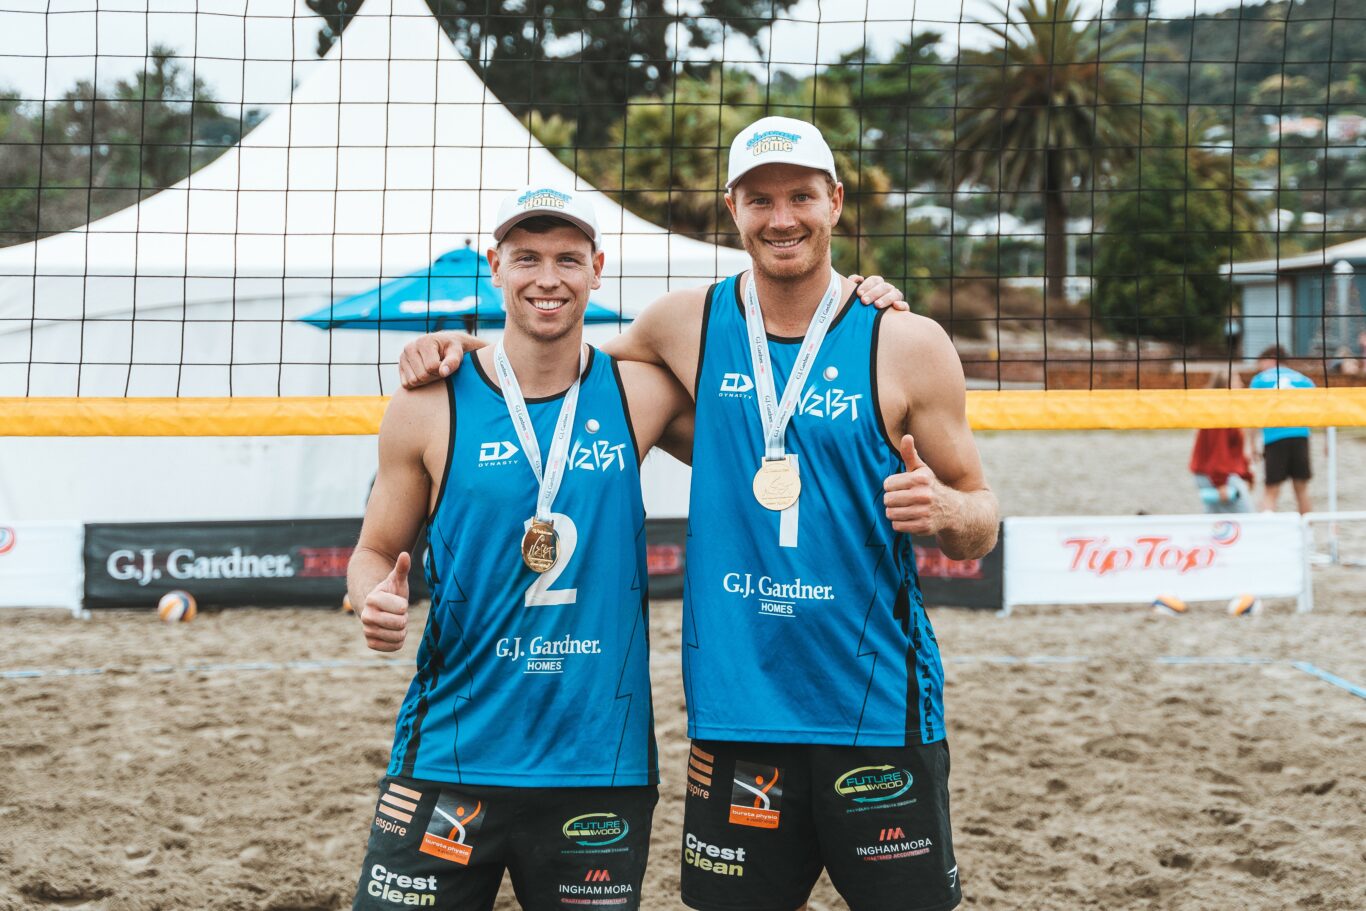 J. Gardner Homes NZ Beach Volleyball Tour Nelson Gold Medal winners Sam Odea and Brad Fuller